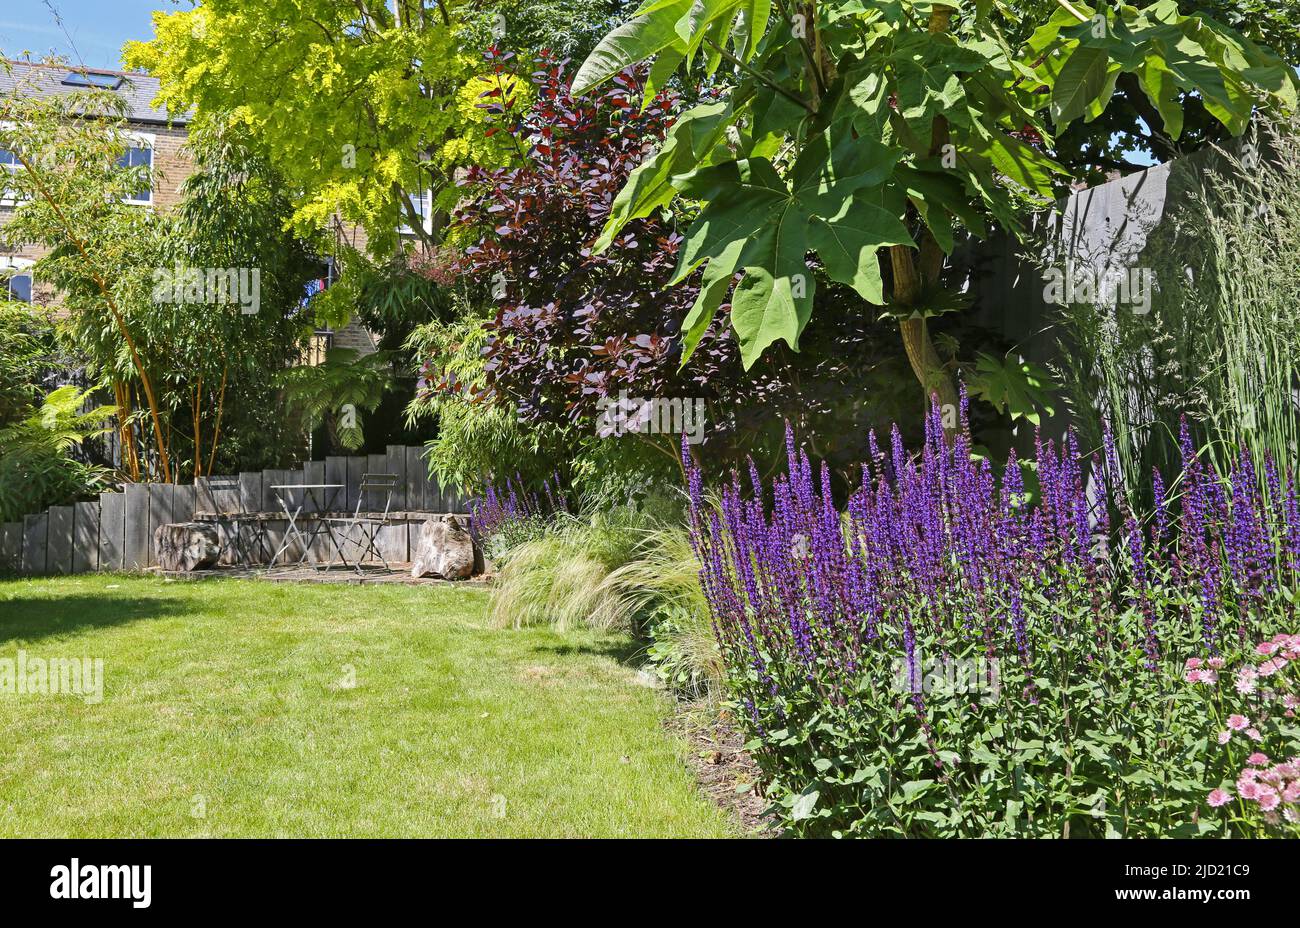 Un jardín trasero lleno de plantas en el sur de Londres, Reino Unido. Muestra asientos de madera y bambú (izquierda), césped, césped ornamental y salvia nemorosa púrpura. Foto de stock